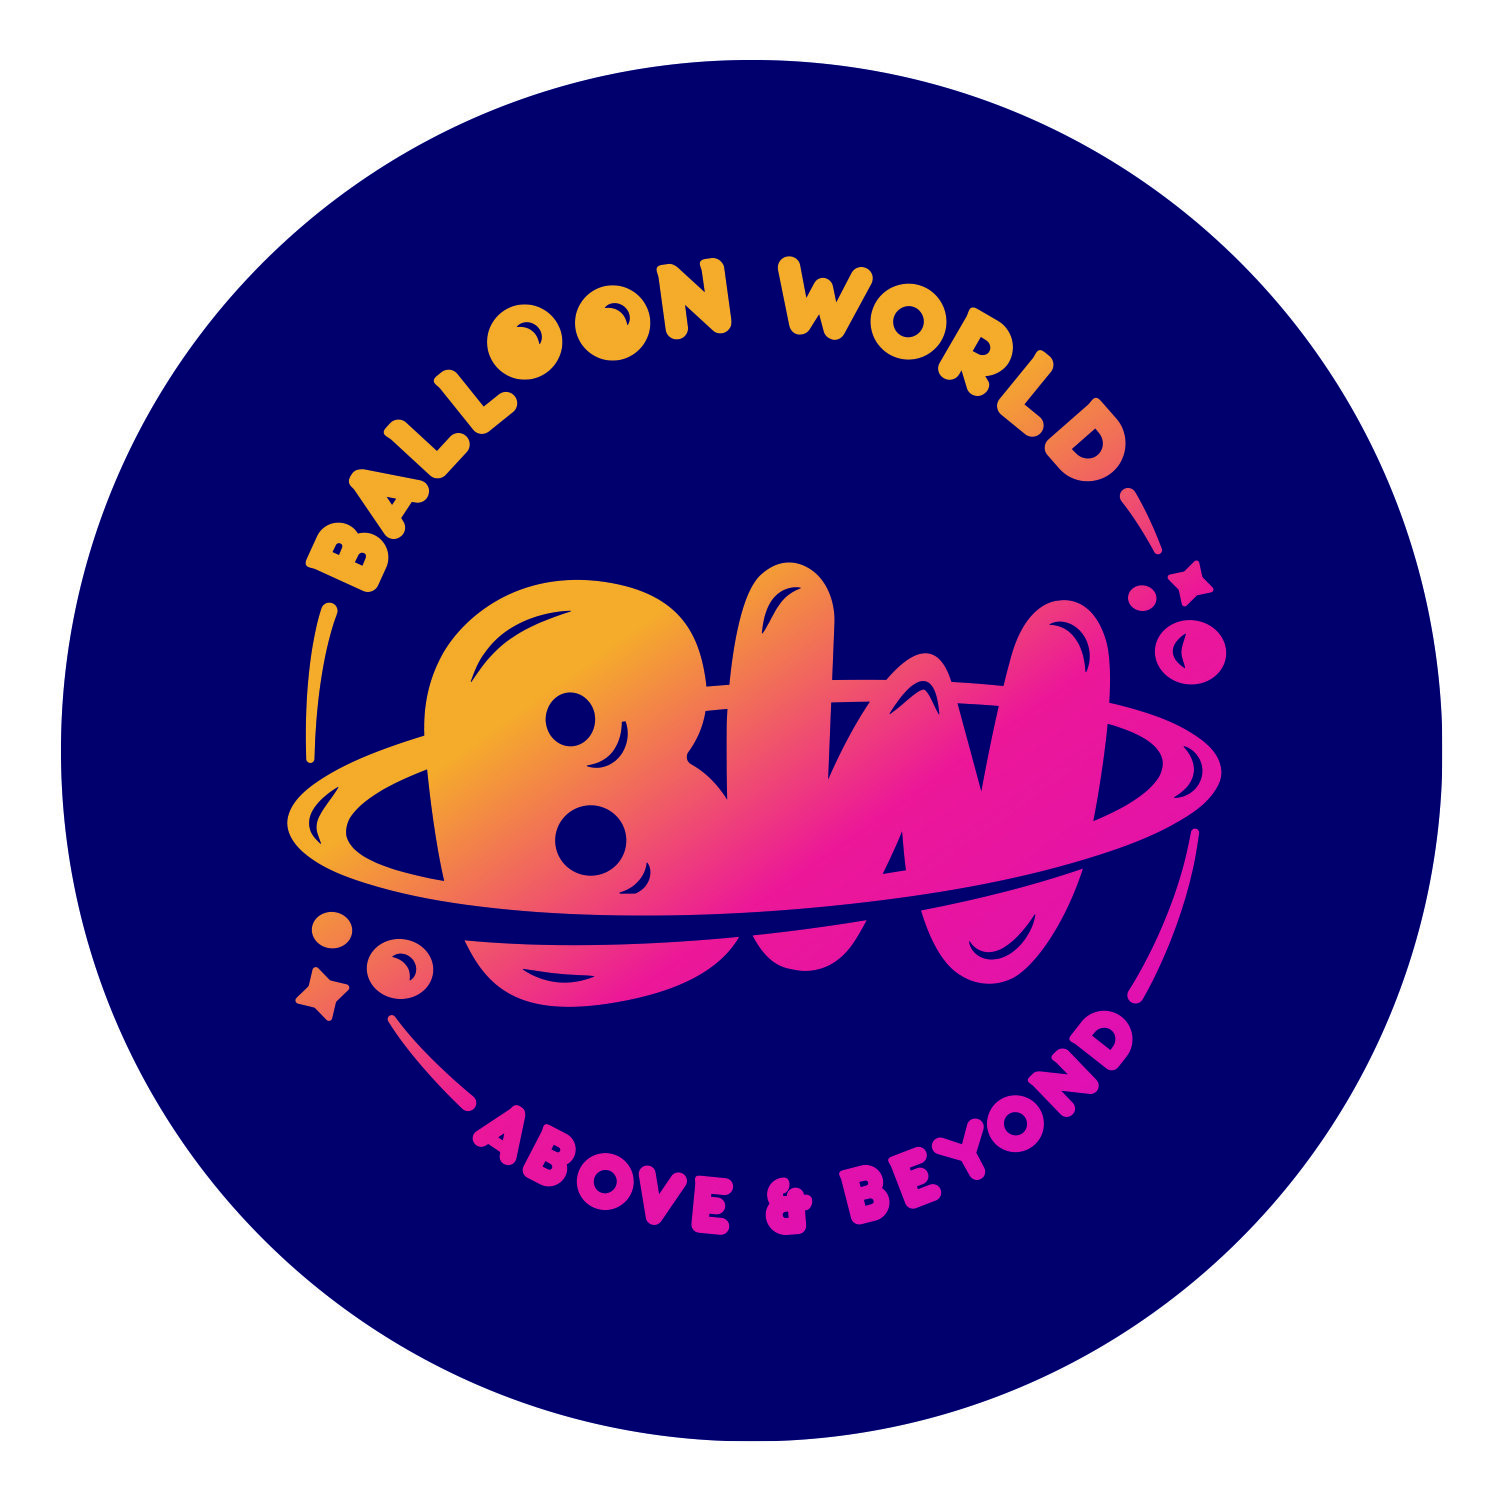 BALLOON WORLD EVENTS